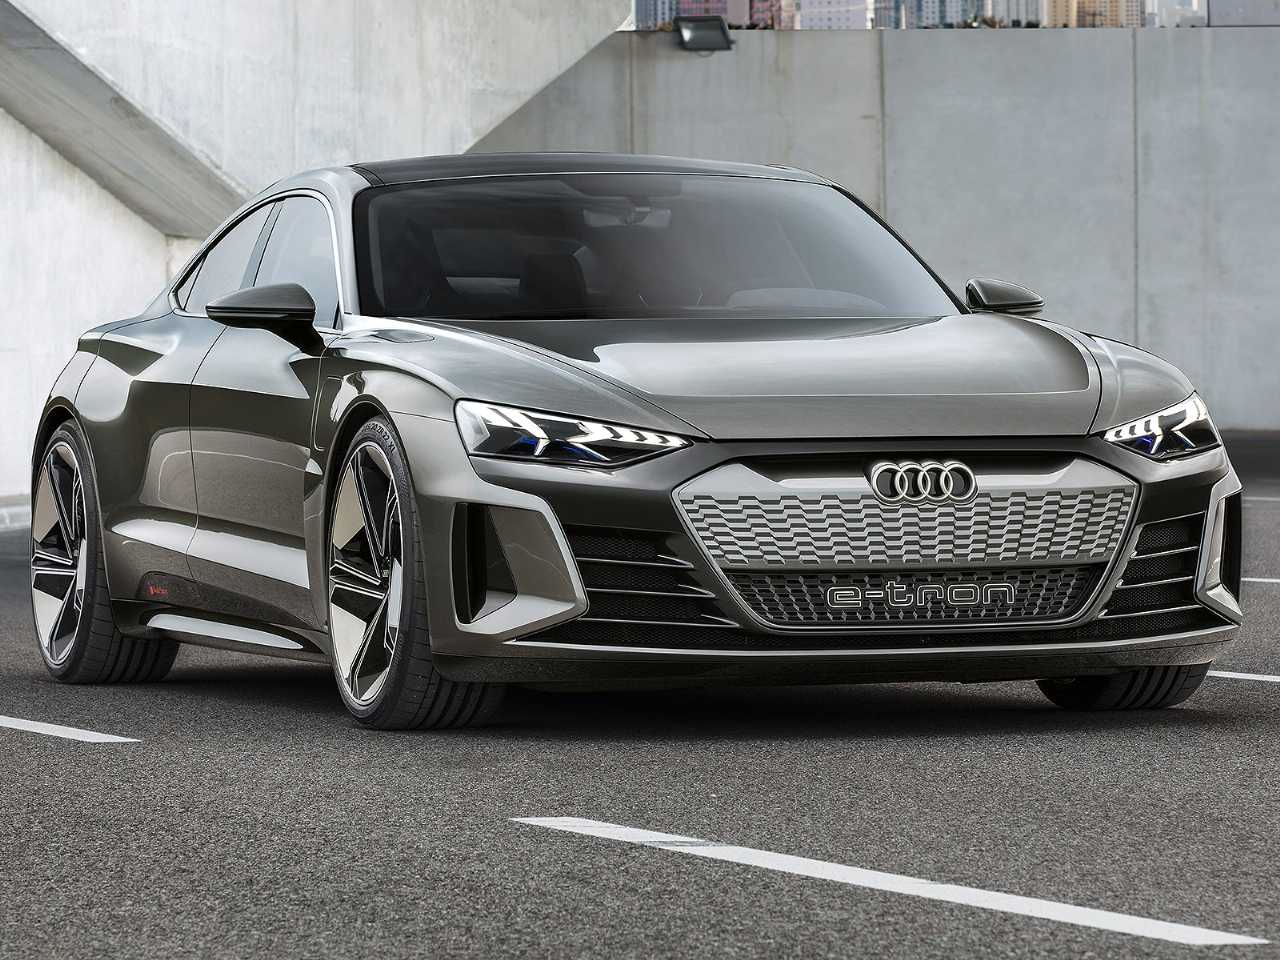 Acima o Audi e-tron GT, conceito que traz cabine completamente livre de componentes de origem animal